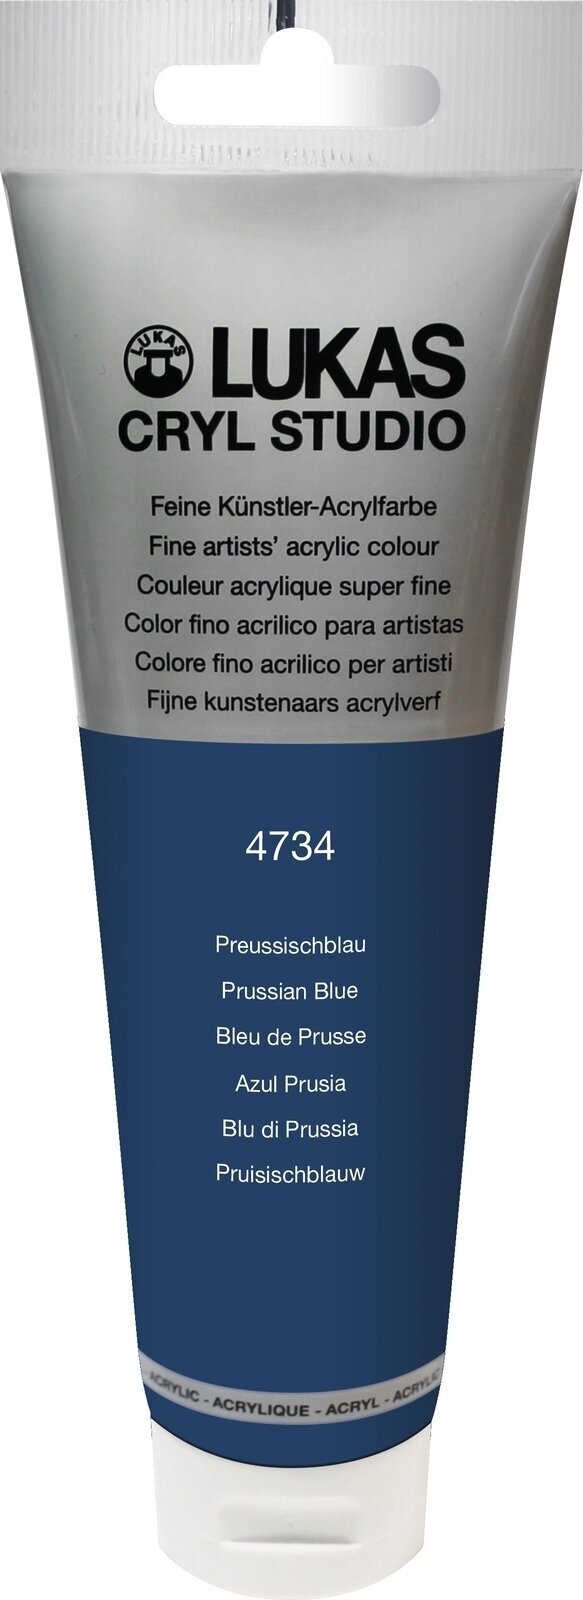 Peinture acrylique Lukas Cryl Studio Acrylic Paint Plastic Tube Peinture acrylique Prussian Blue 125 ml 1 pc